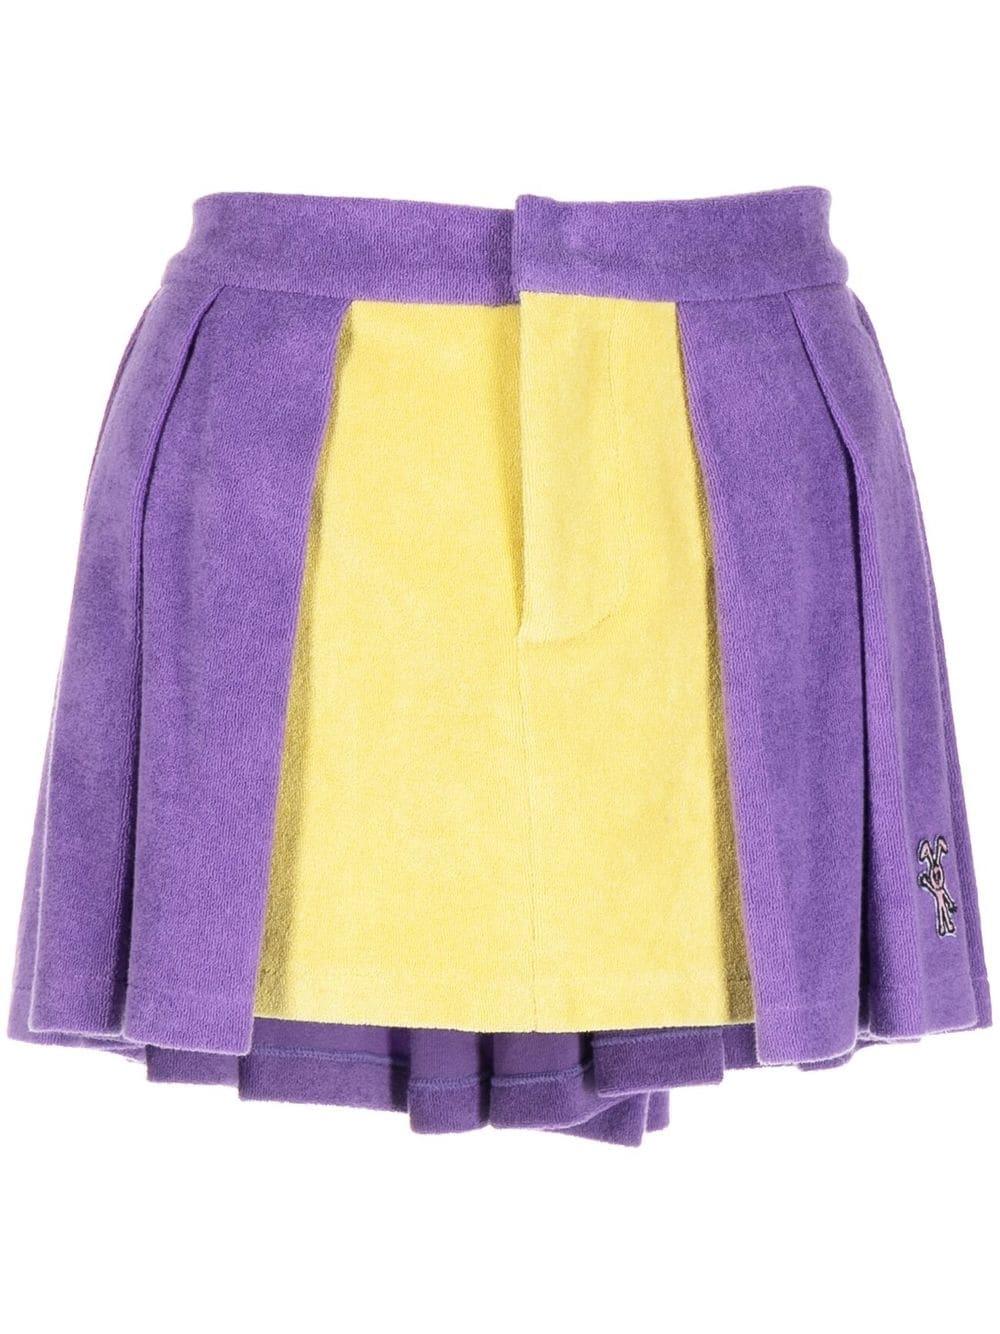 Natasha Zinko Terry Tennis Skirt in Purple | Lyst